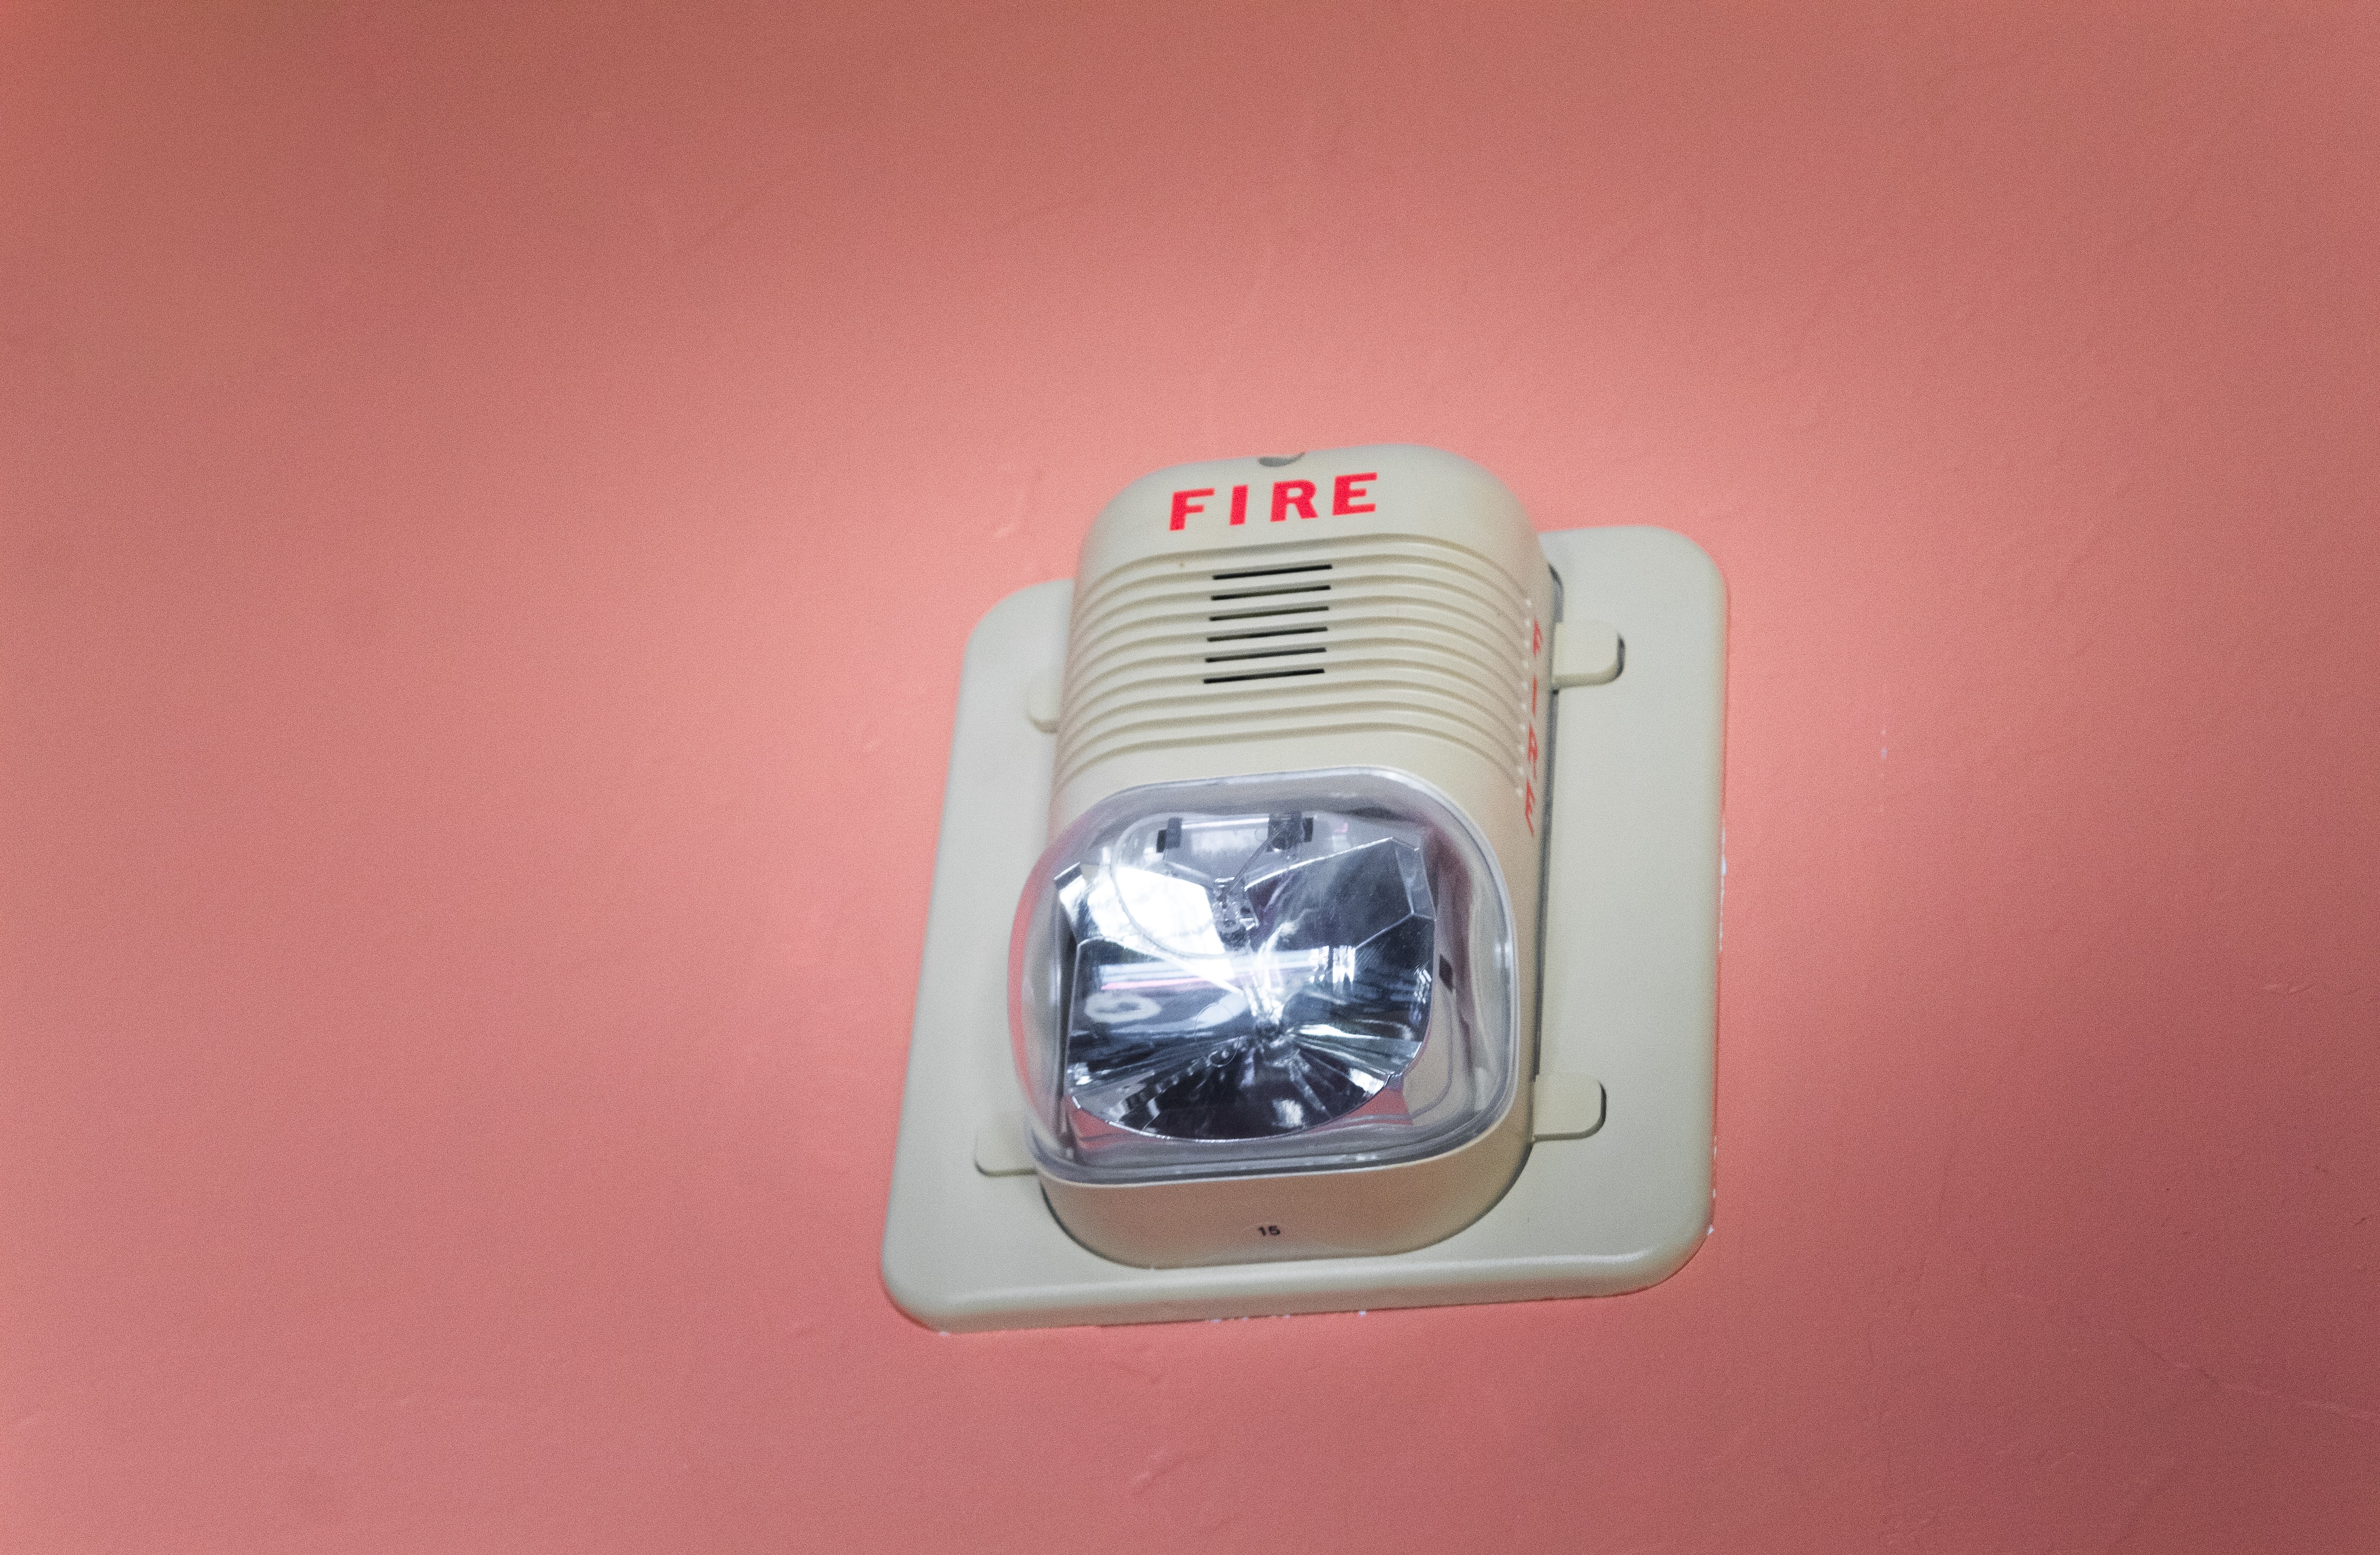 Požární hlásič vám může zachránit život.